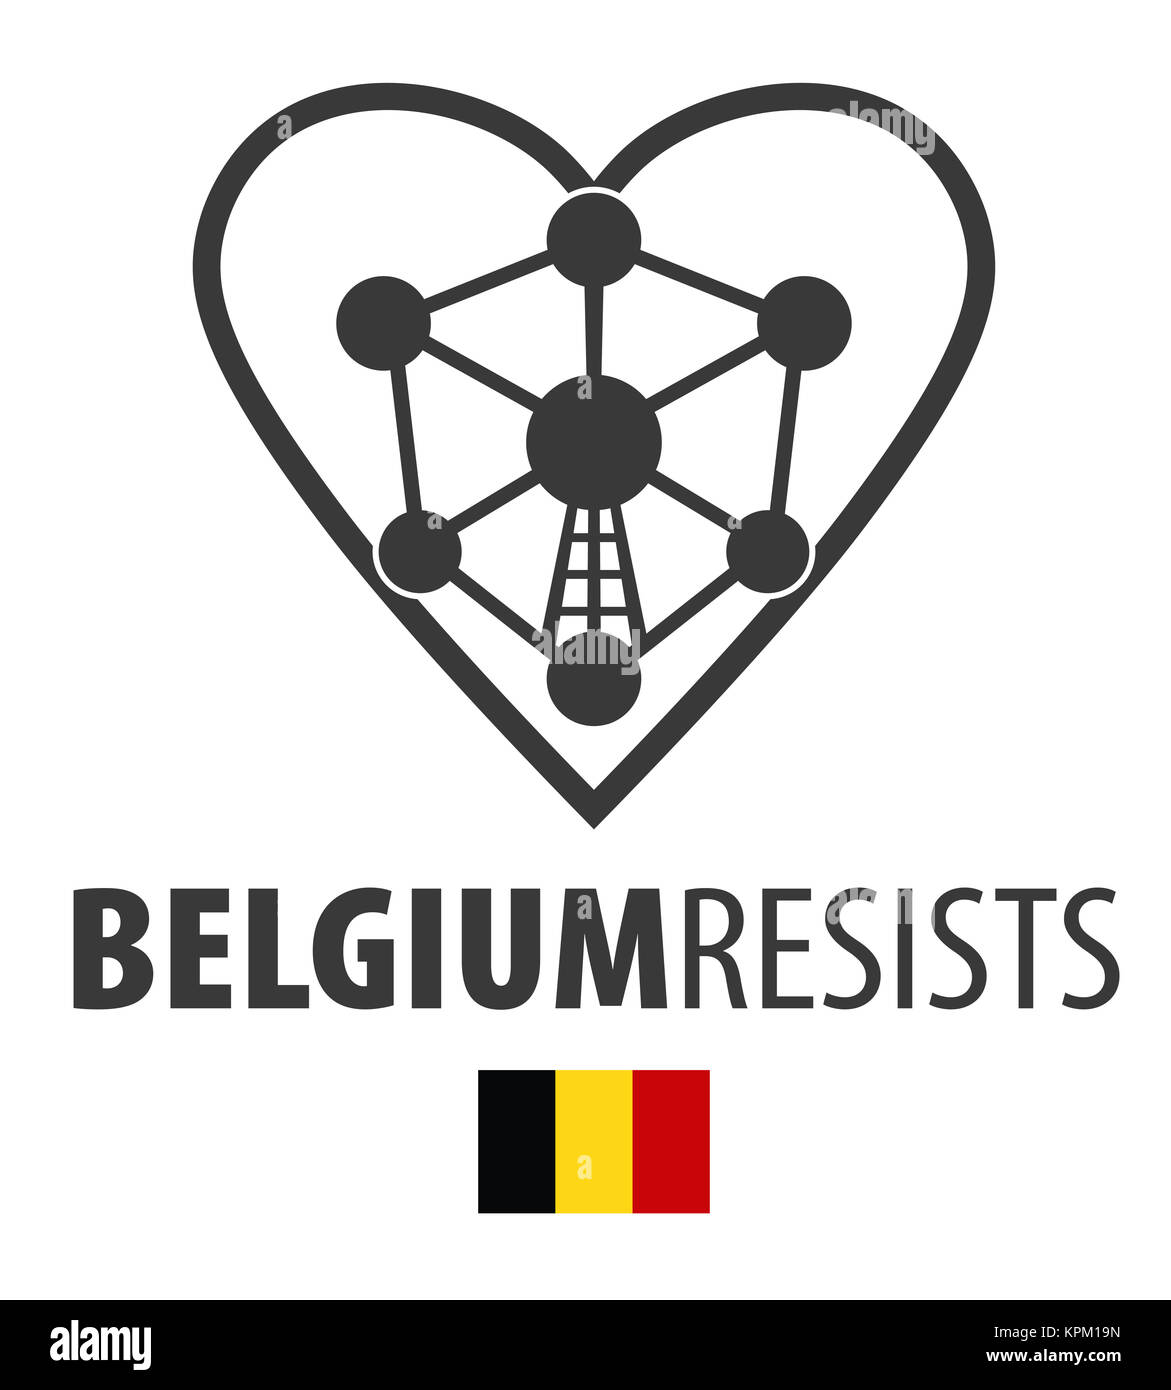 La Belgique résiste aux symbole du terrorisme Banque D'Images